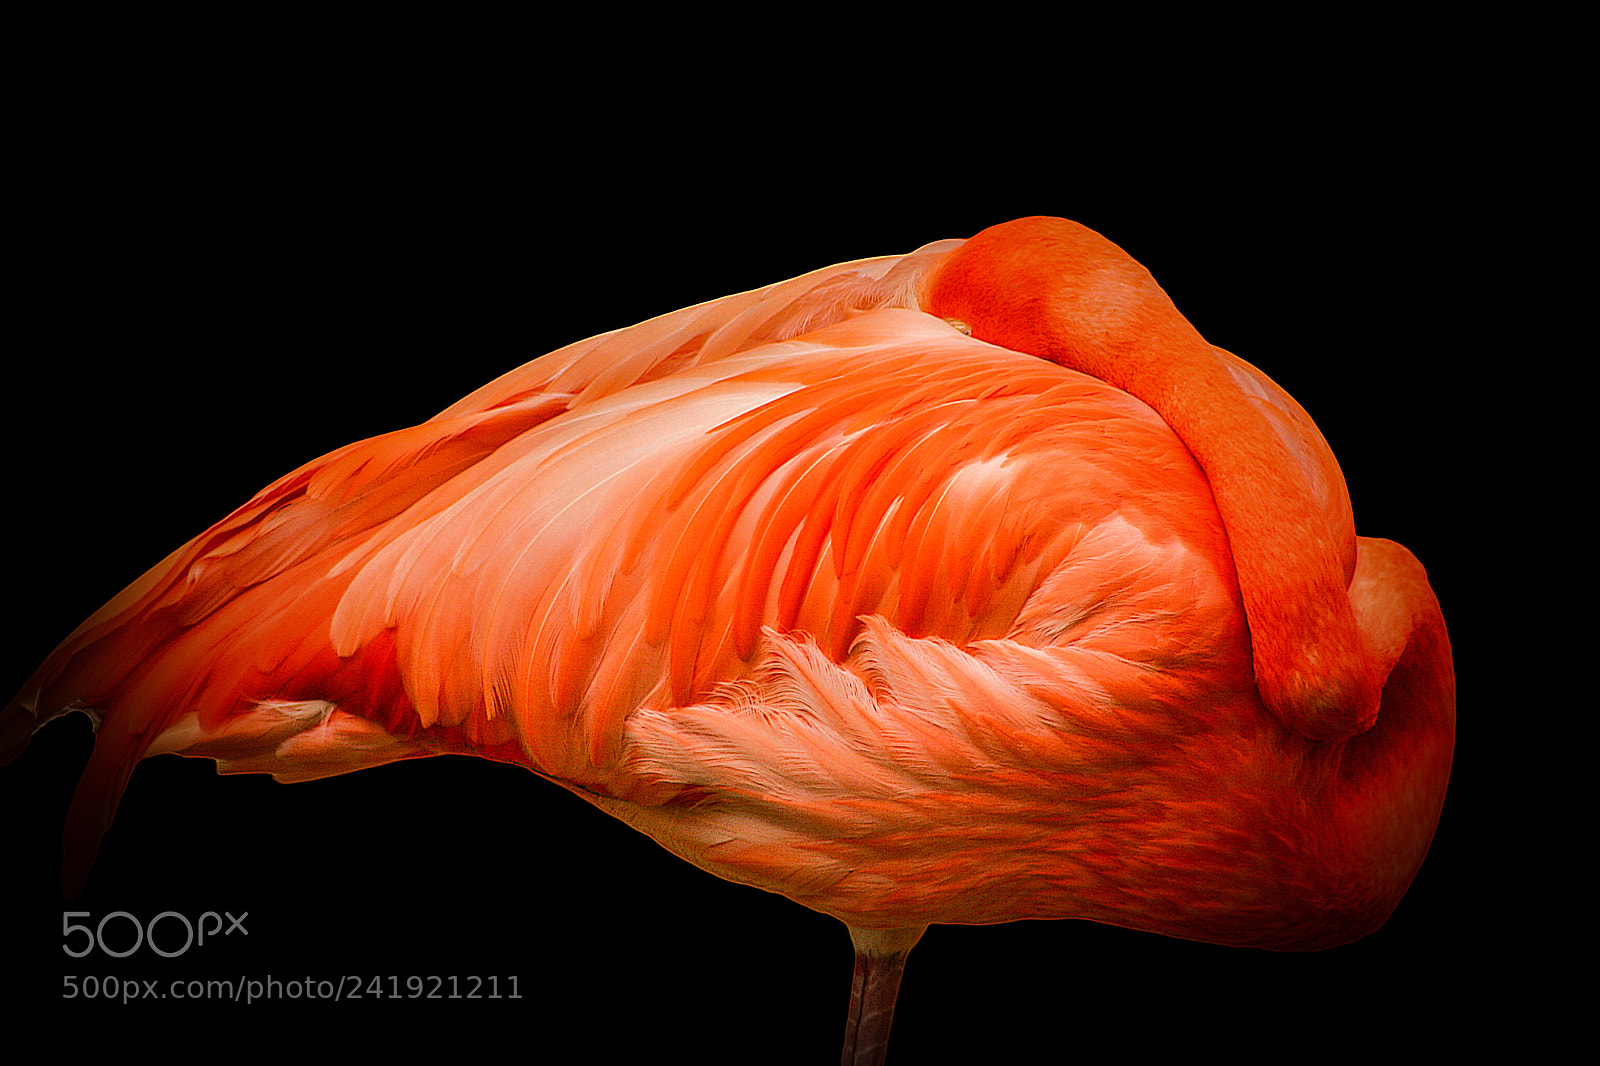 Canon EOS D60 sample photo. Sleeping flamingo photography